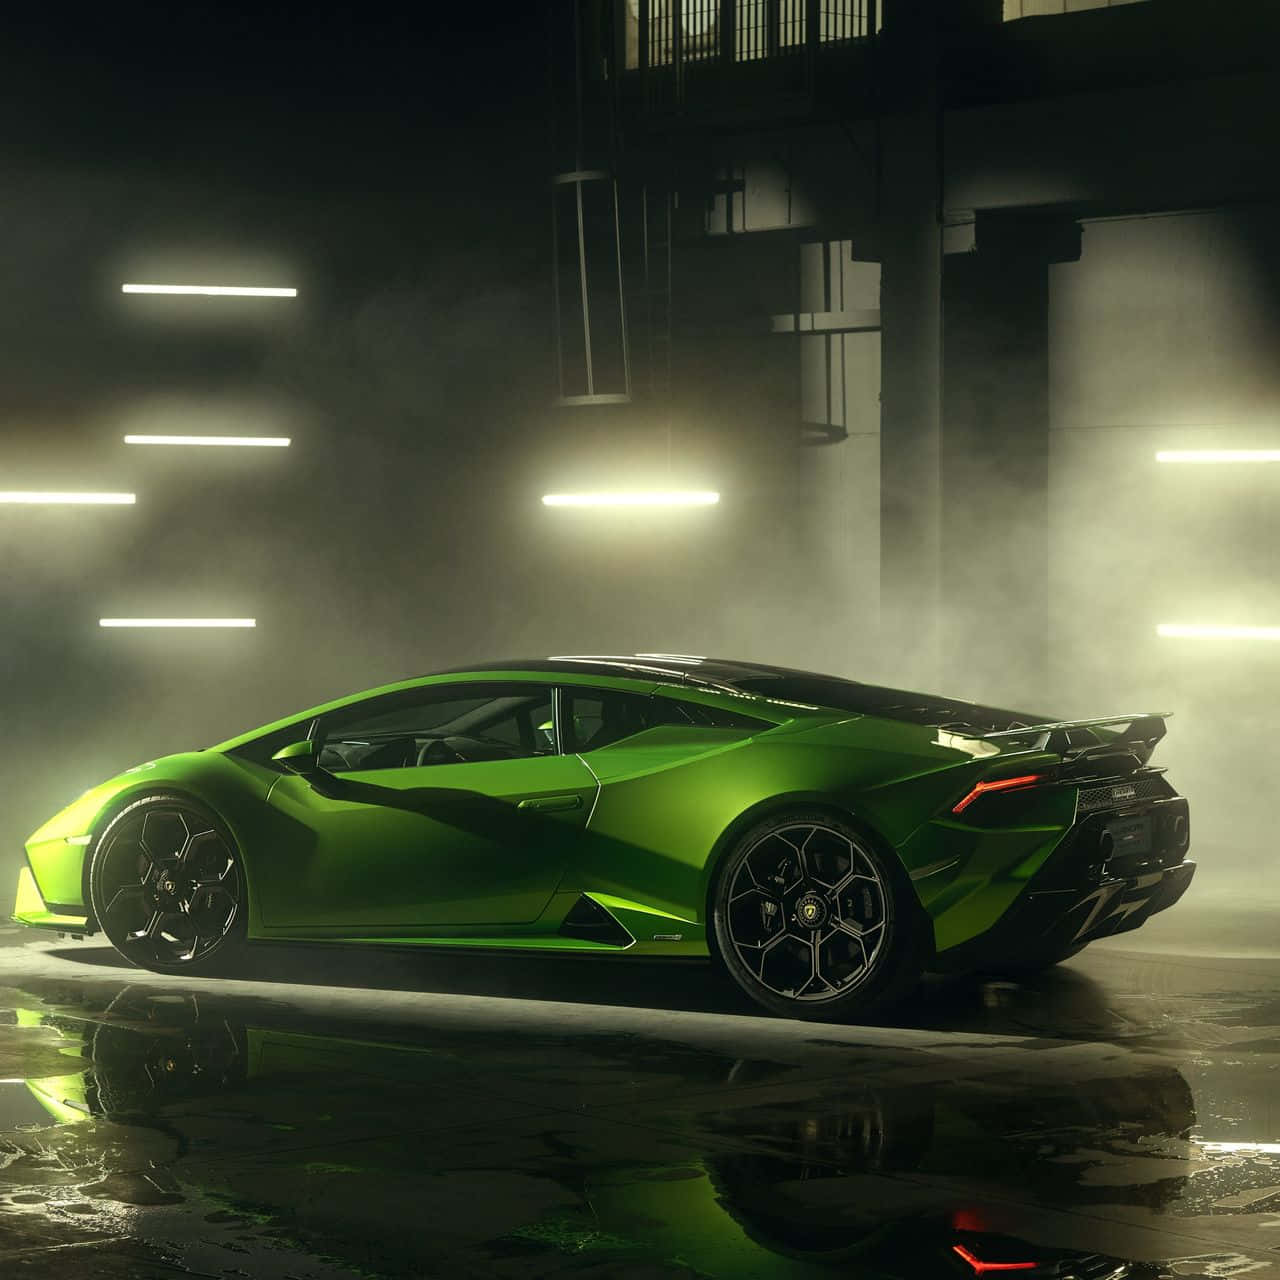 Eingrüner Lamborghini Huracan Steht In Einer Dunklen Garage.